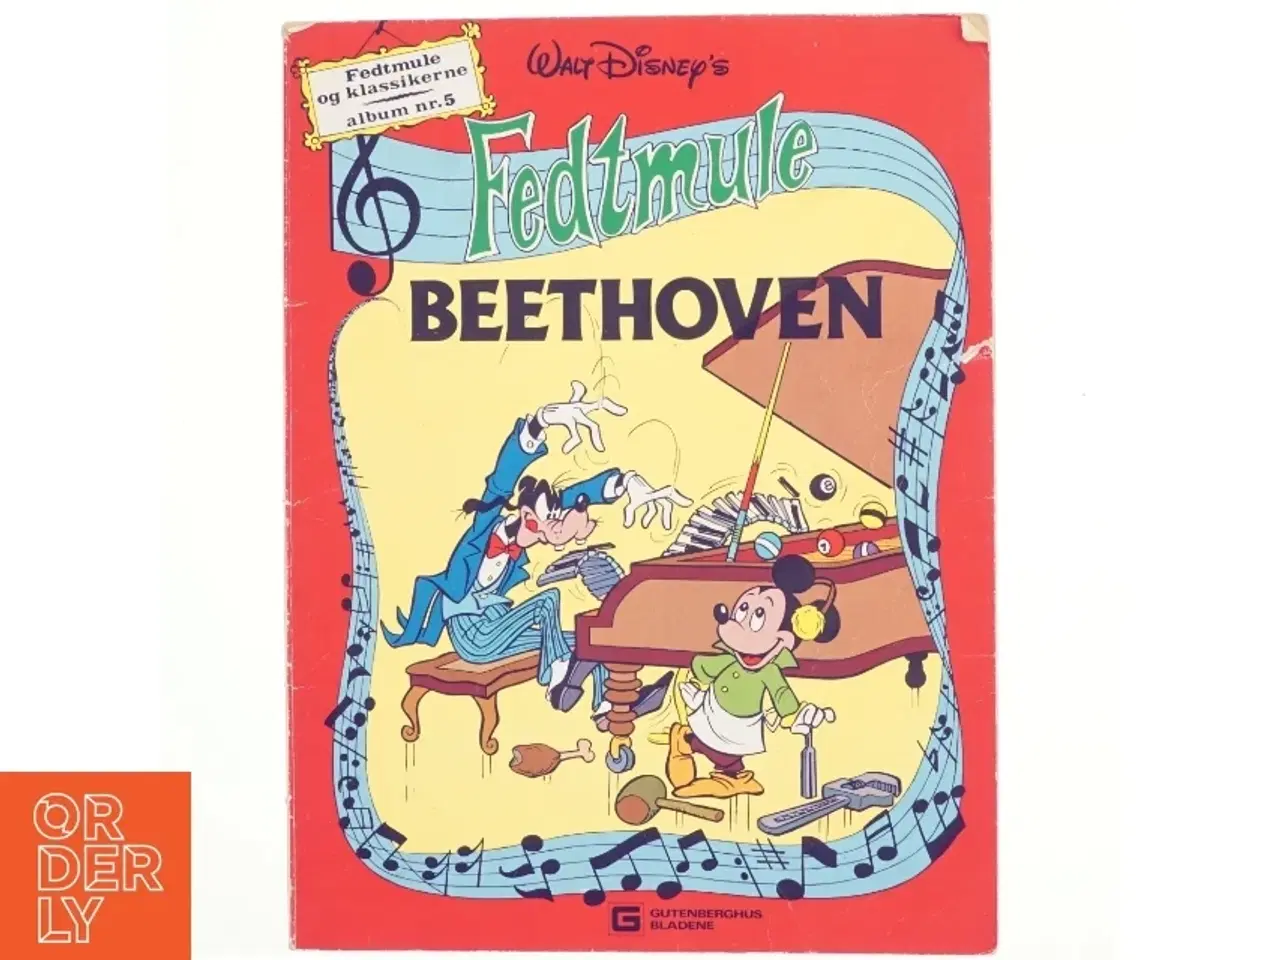 Billede 1 - Fedtmule og Klassikerne af Walt Disney, Beethoven, album nr. 5 (Tegneserie)